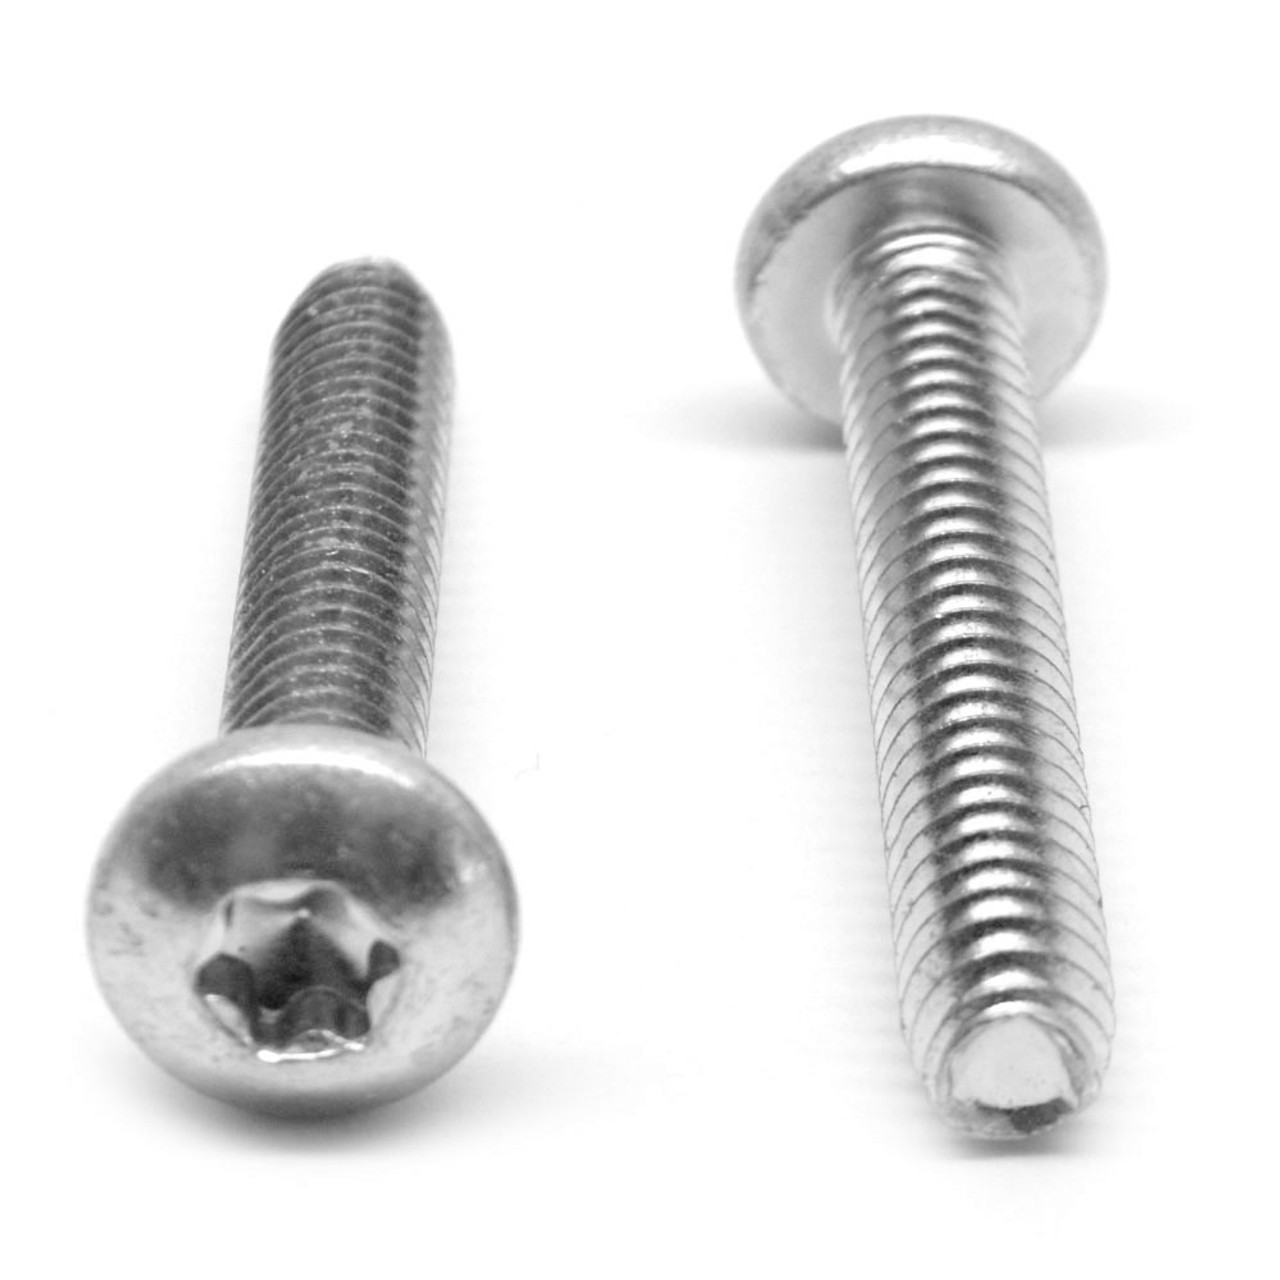 M3 x 0.50 x 10 MM Coarse Thread Thread Rolling Screw 6 Lobe Pan Head Stainless Steel 18-8 Wax